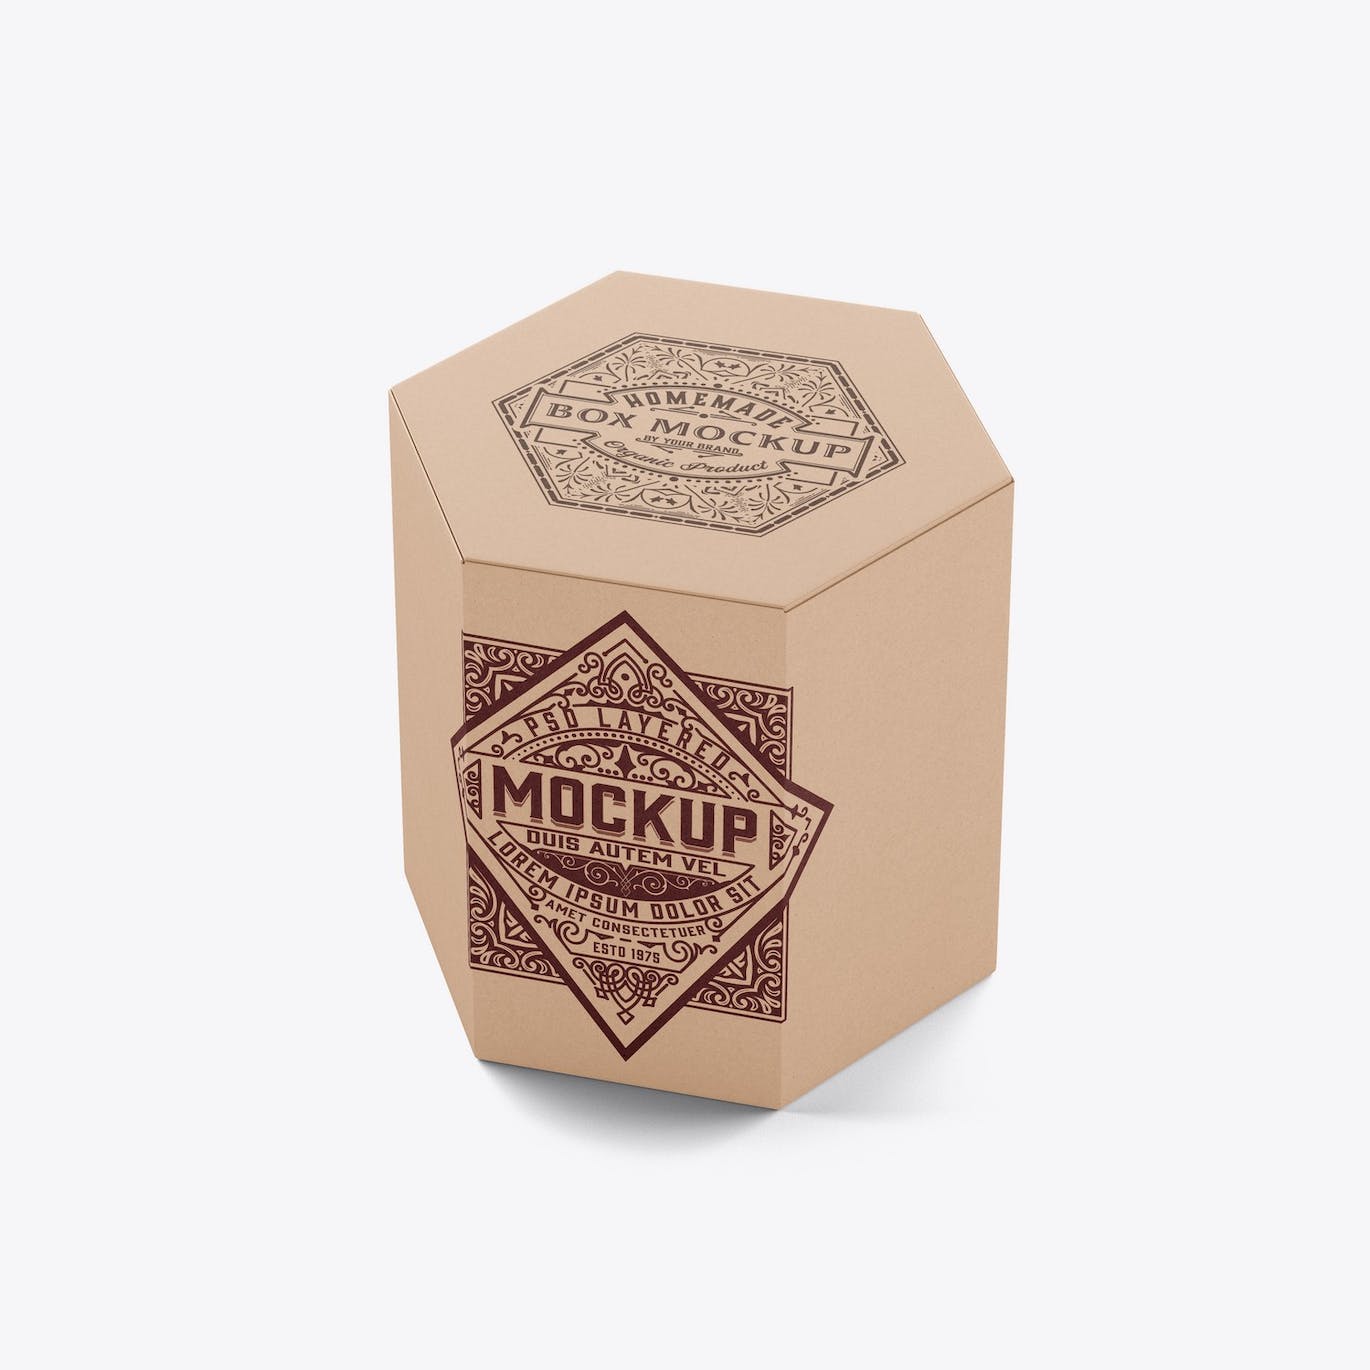 六边形长方体纸盒包装设计样机 Hexagonal Box Mockup 样机素材 第9张